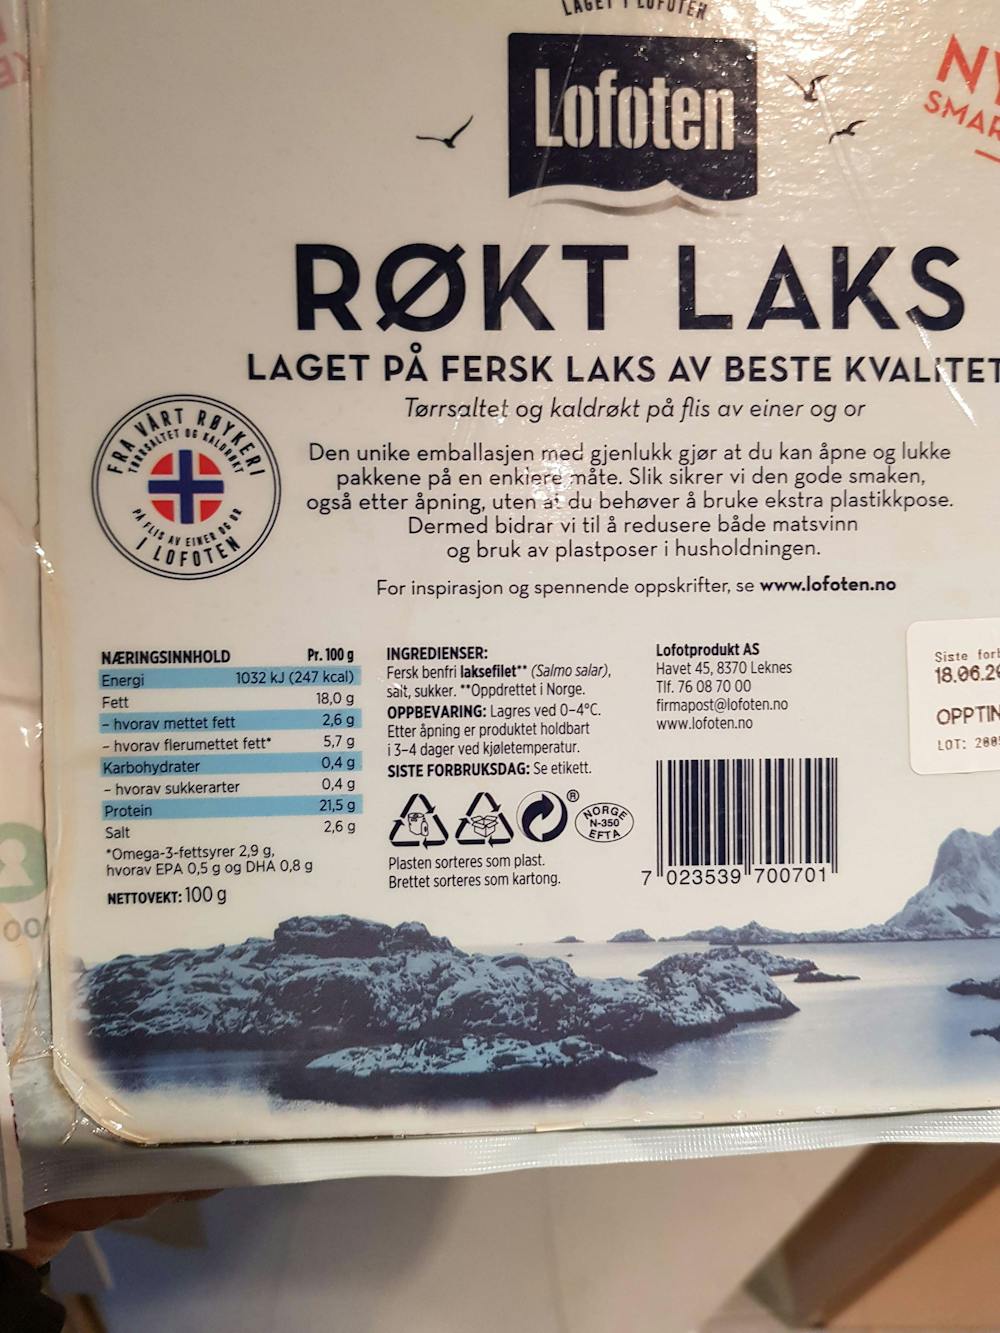 Ingredienslisten til Røkt laks, Lofoten